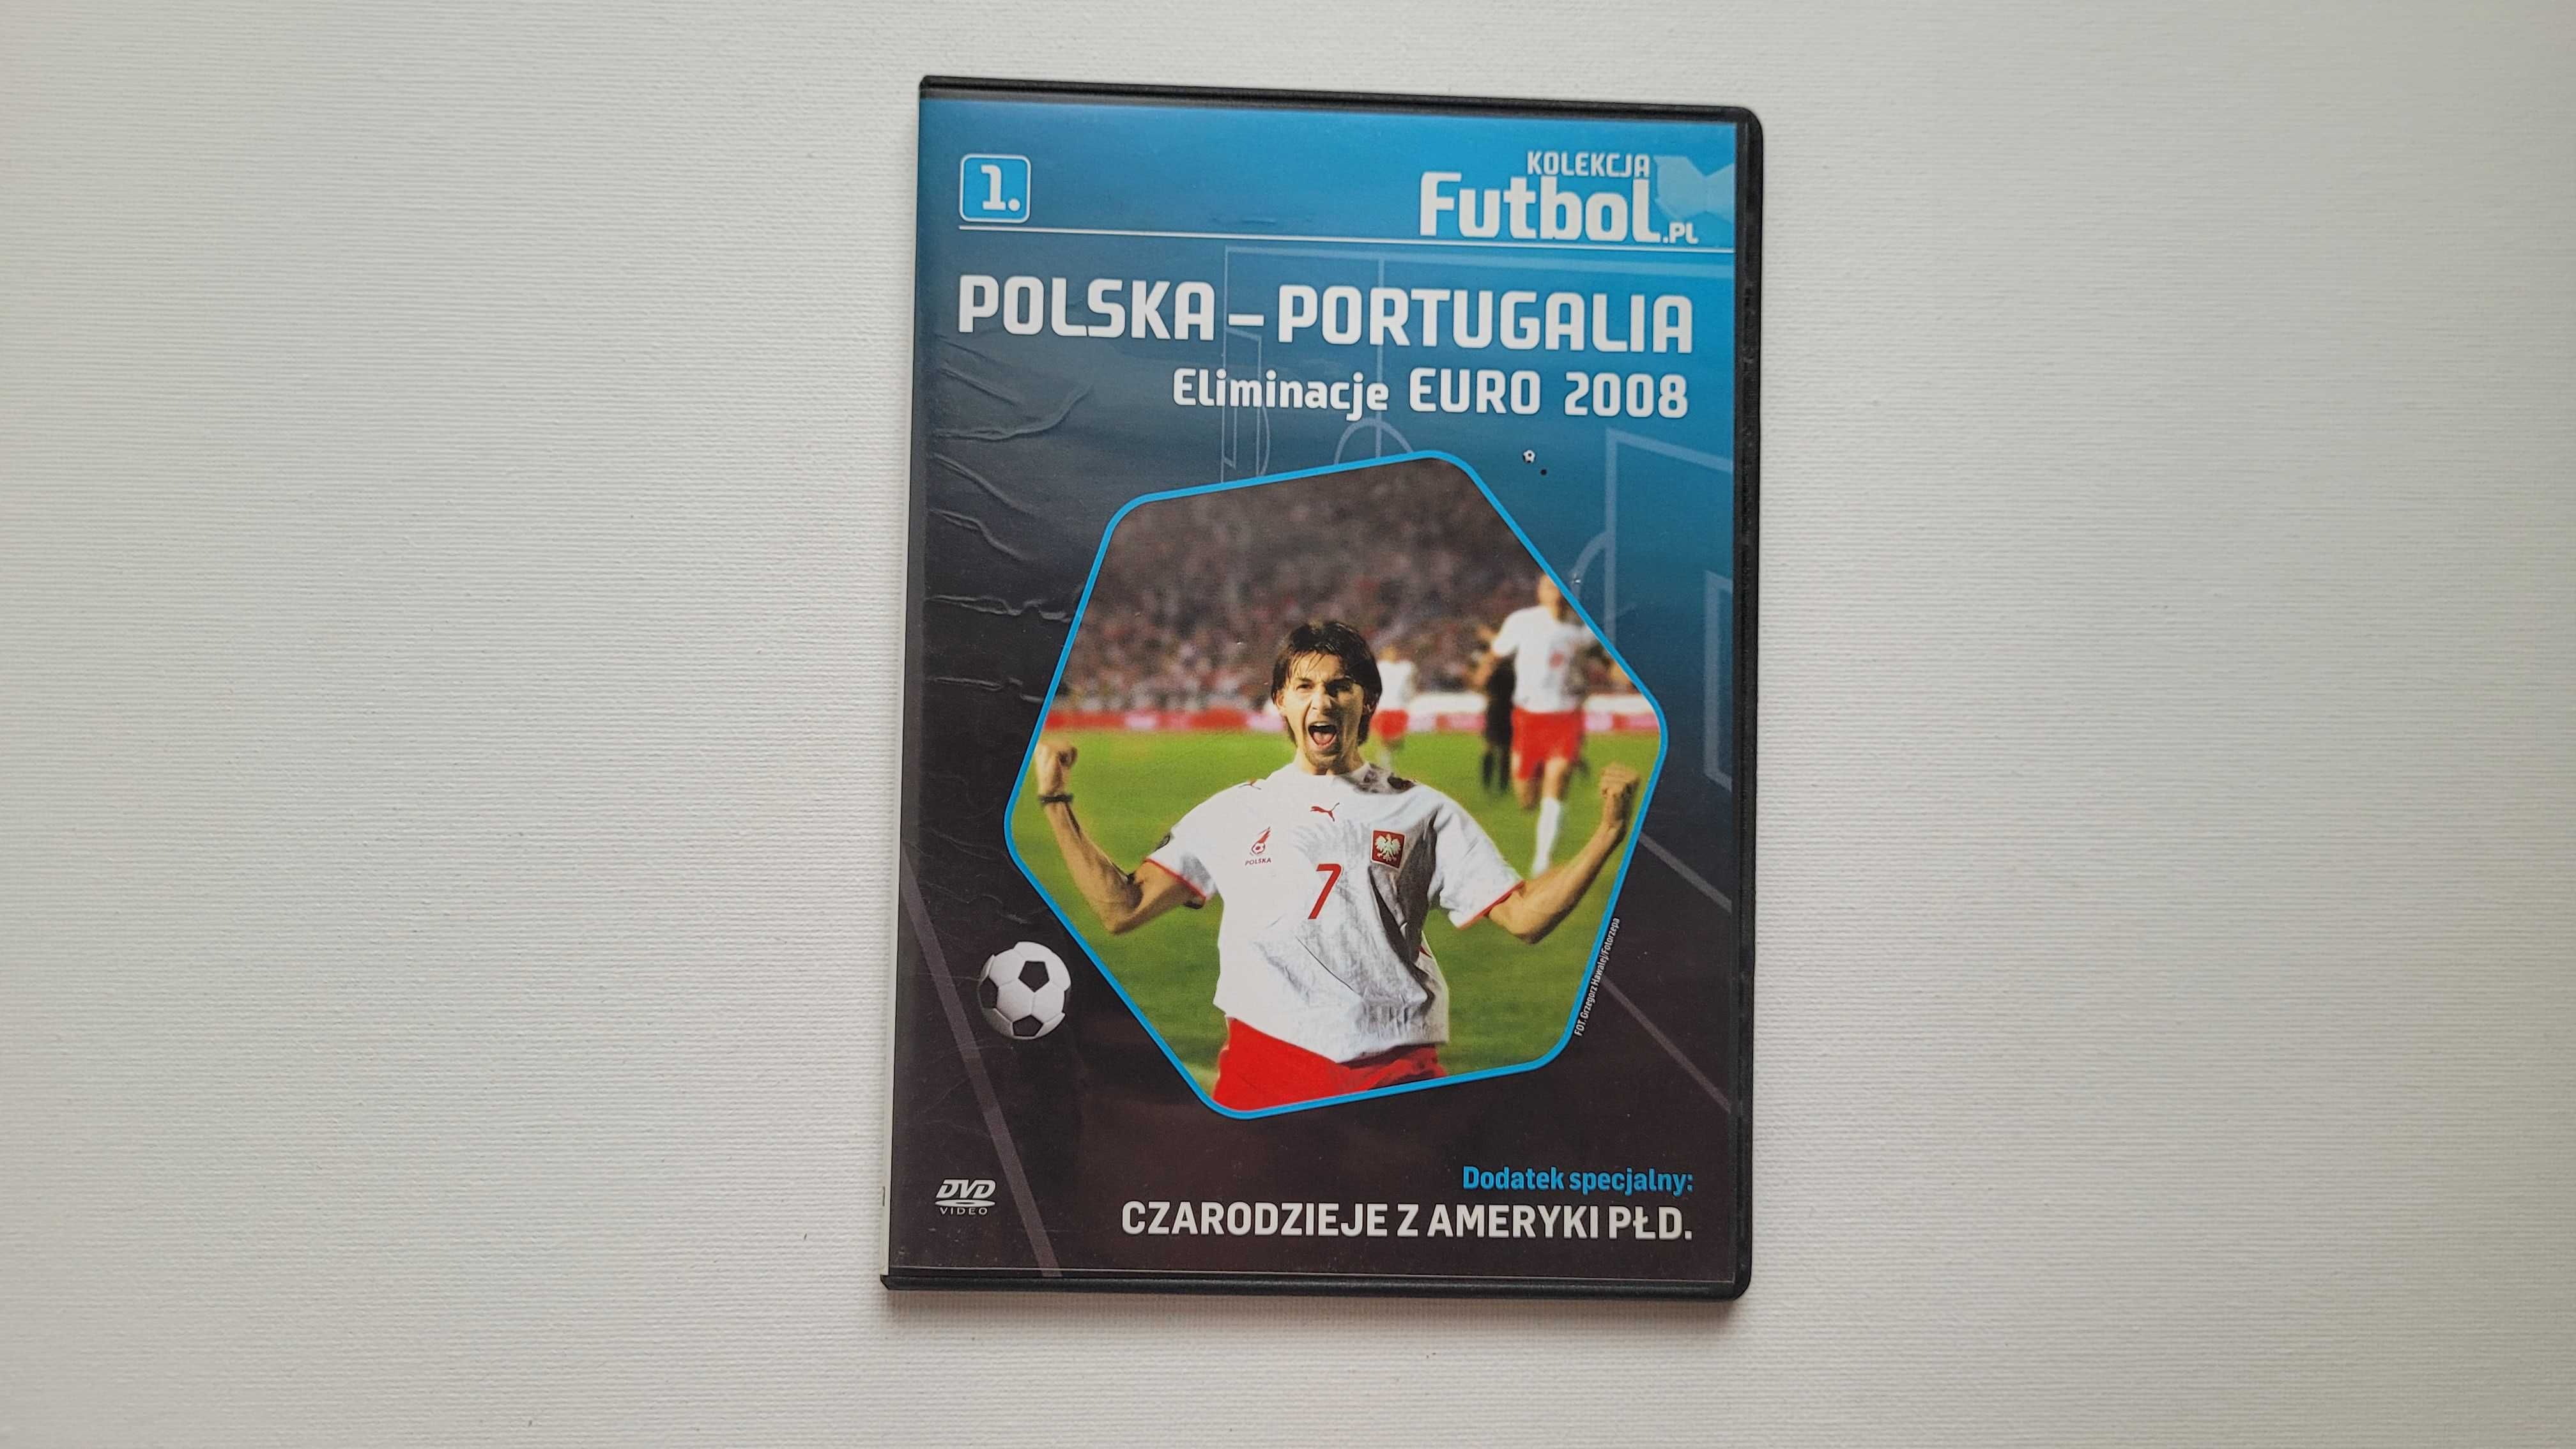 Polska-Portugalia, Eliminacje Euro 2008, Kolekcja Futbol pl